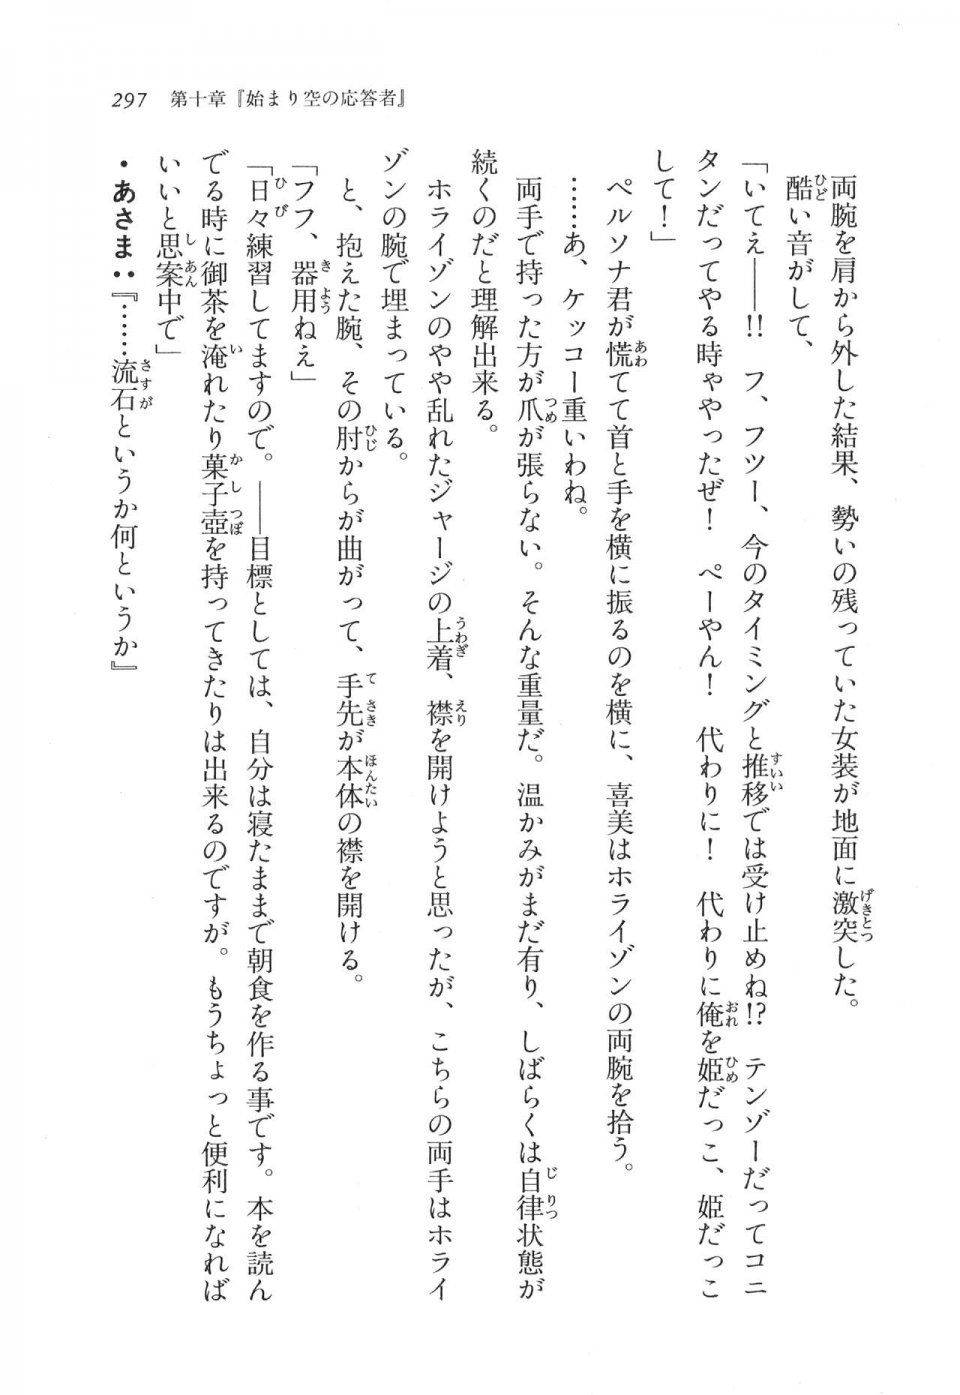 Kyoukai Senjou no Horizon LN Vol 11(5A) - Photo #297